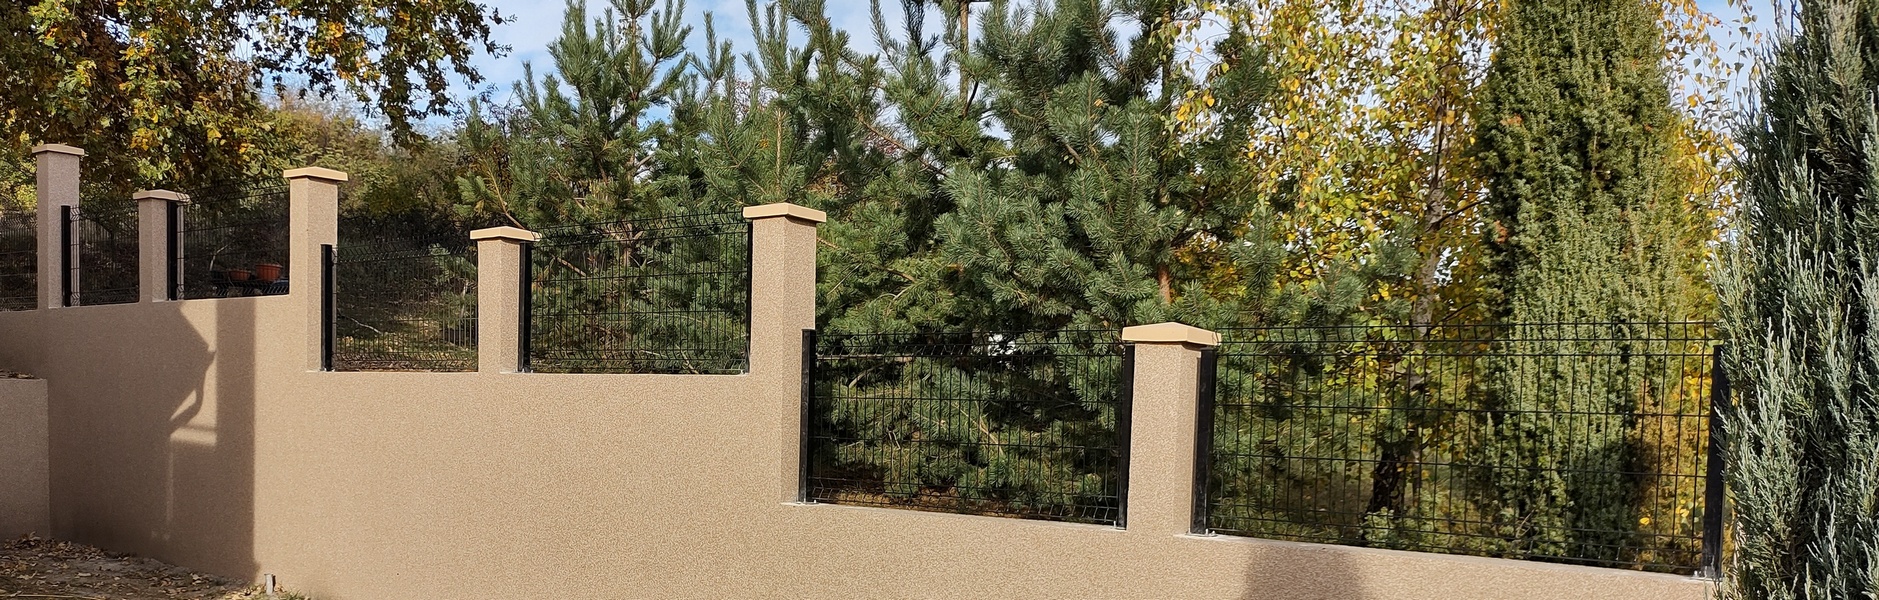 Montaža panelne ograde  izmedju betonskih stubova